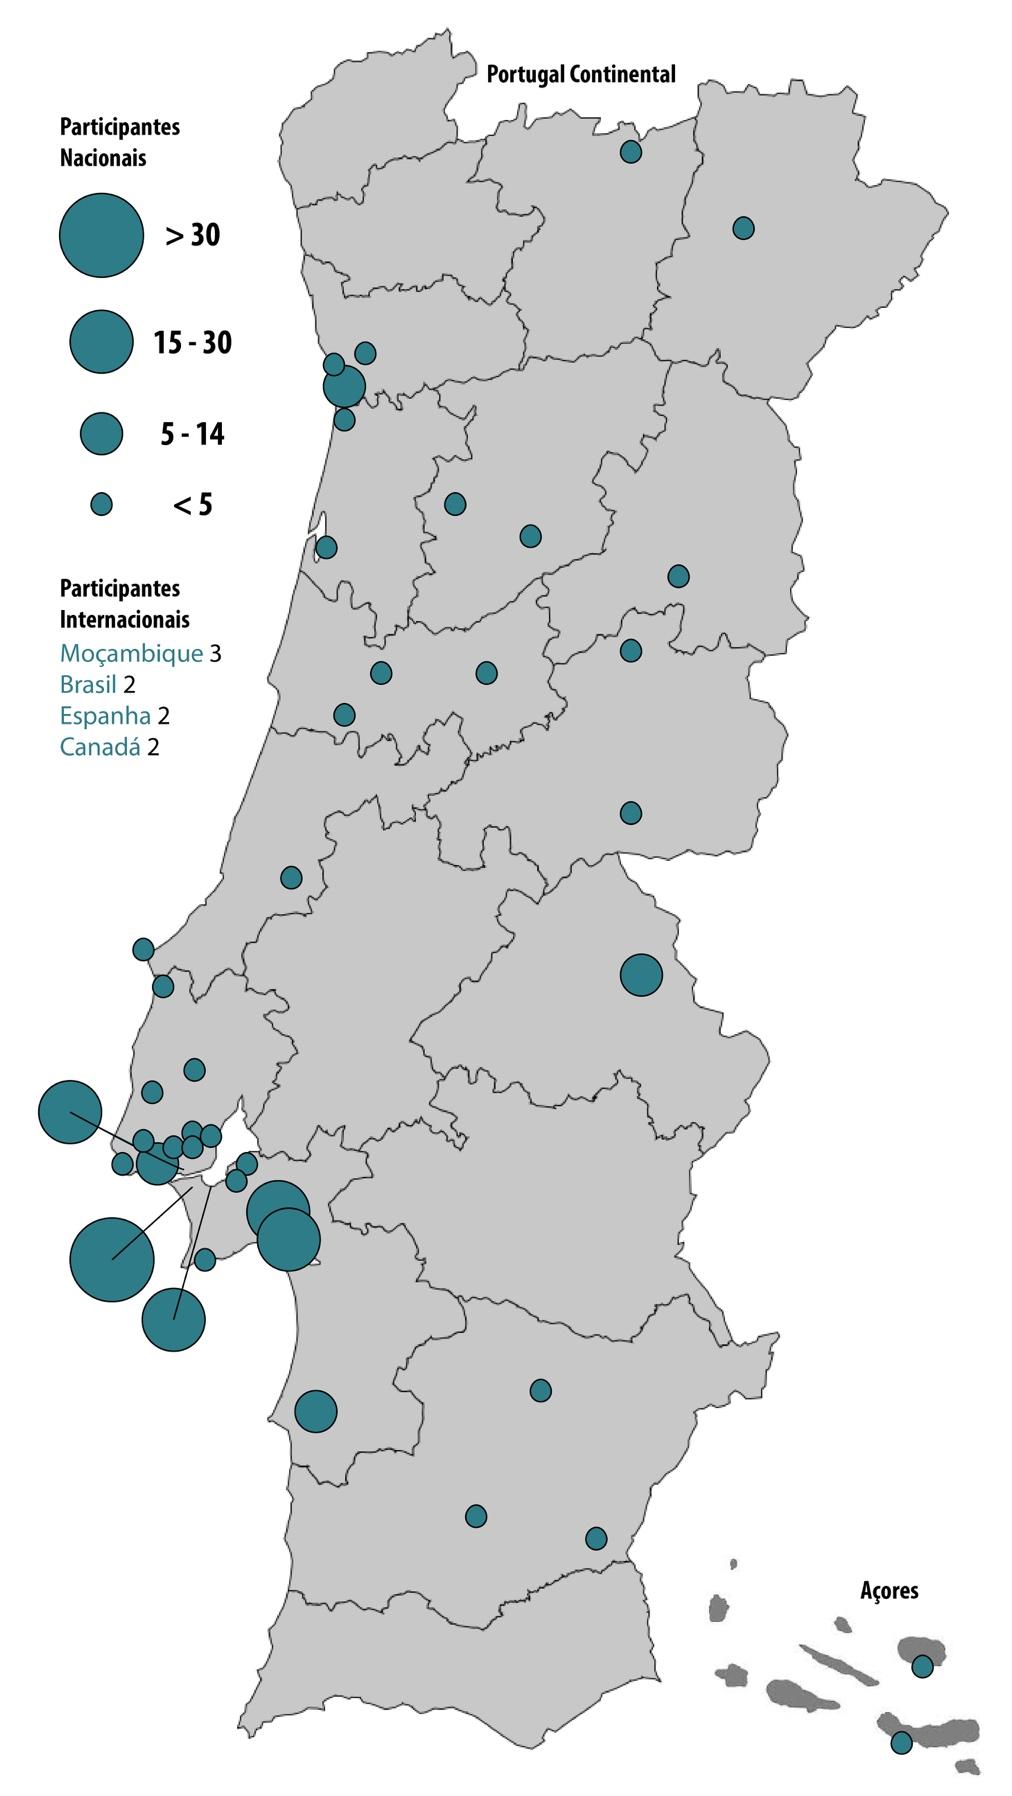 Quanto à origem dos participantes, a esmagadora maioria é proveniente da Região de Lisboa e Vale do Tejo com maior incidência dos concelhos de Almada, Lisboa, Setúbal, Seixal e